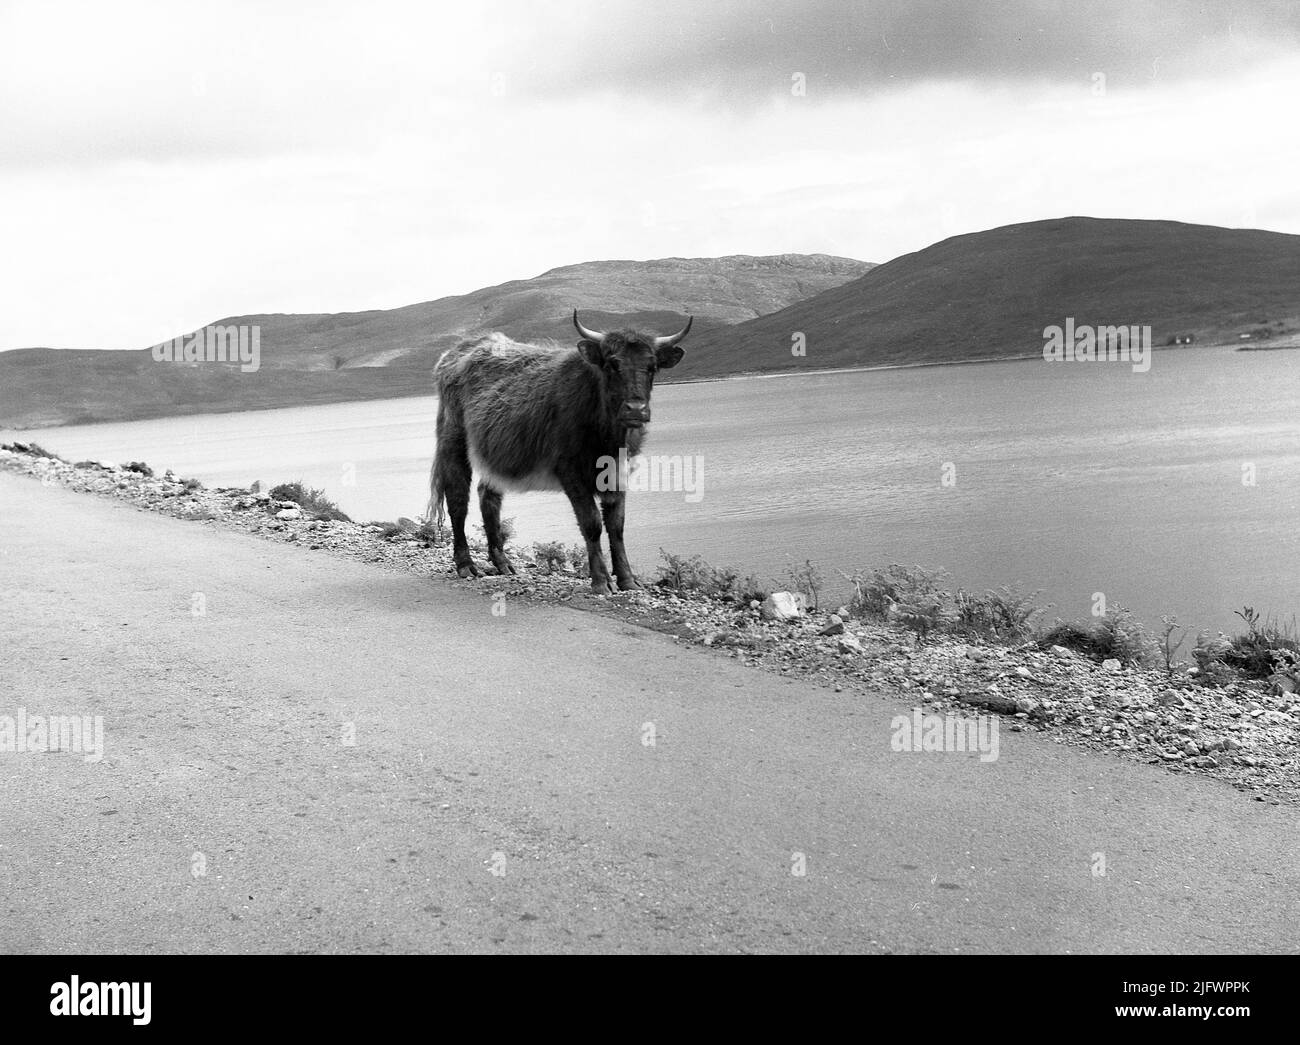 1956, historique, un cheptel de montagne sur le côté d'une route à côté d'un loch, Highland, Écosse, Royaume-Uni. Dans de nombreuses régions des montagnes écossaises, la vache des montagnes peut être vue librement en itinérance. Banque D'Images